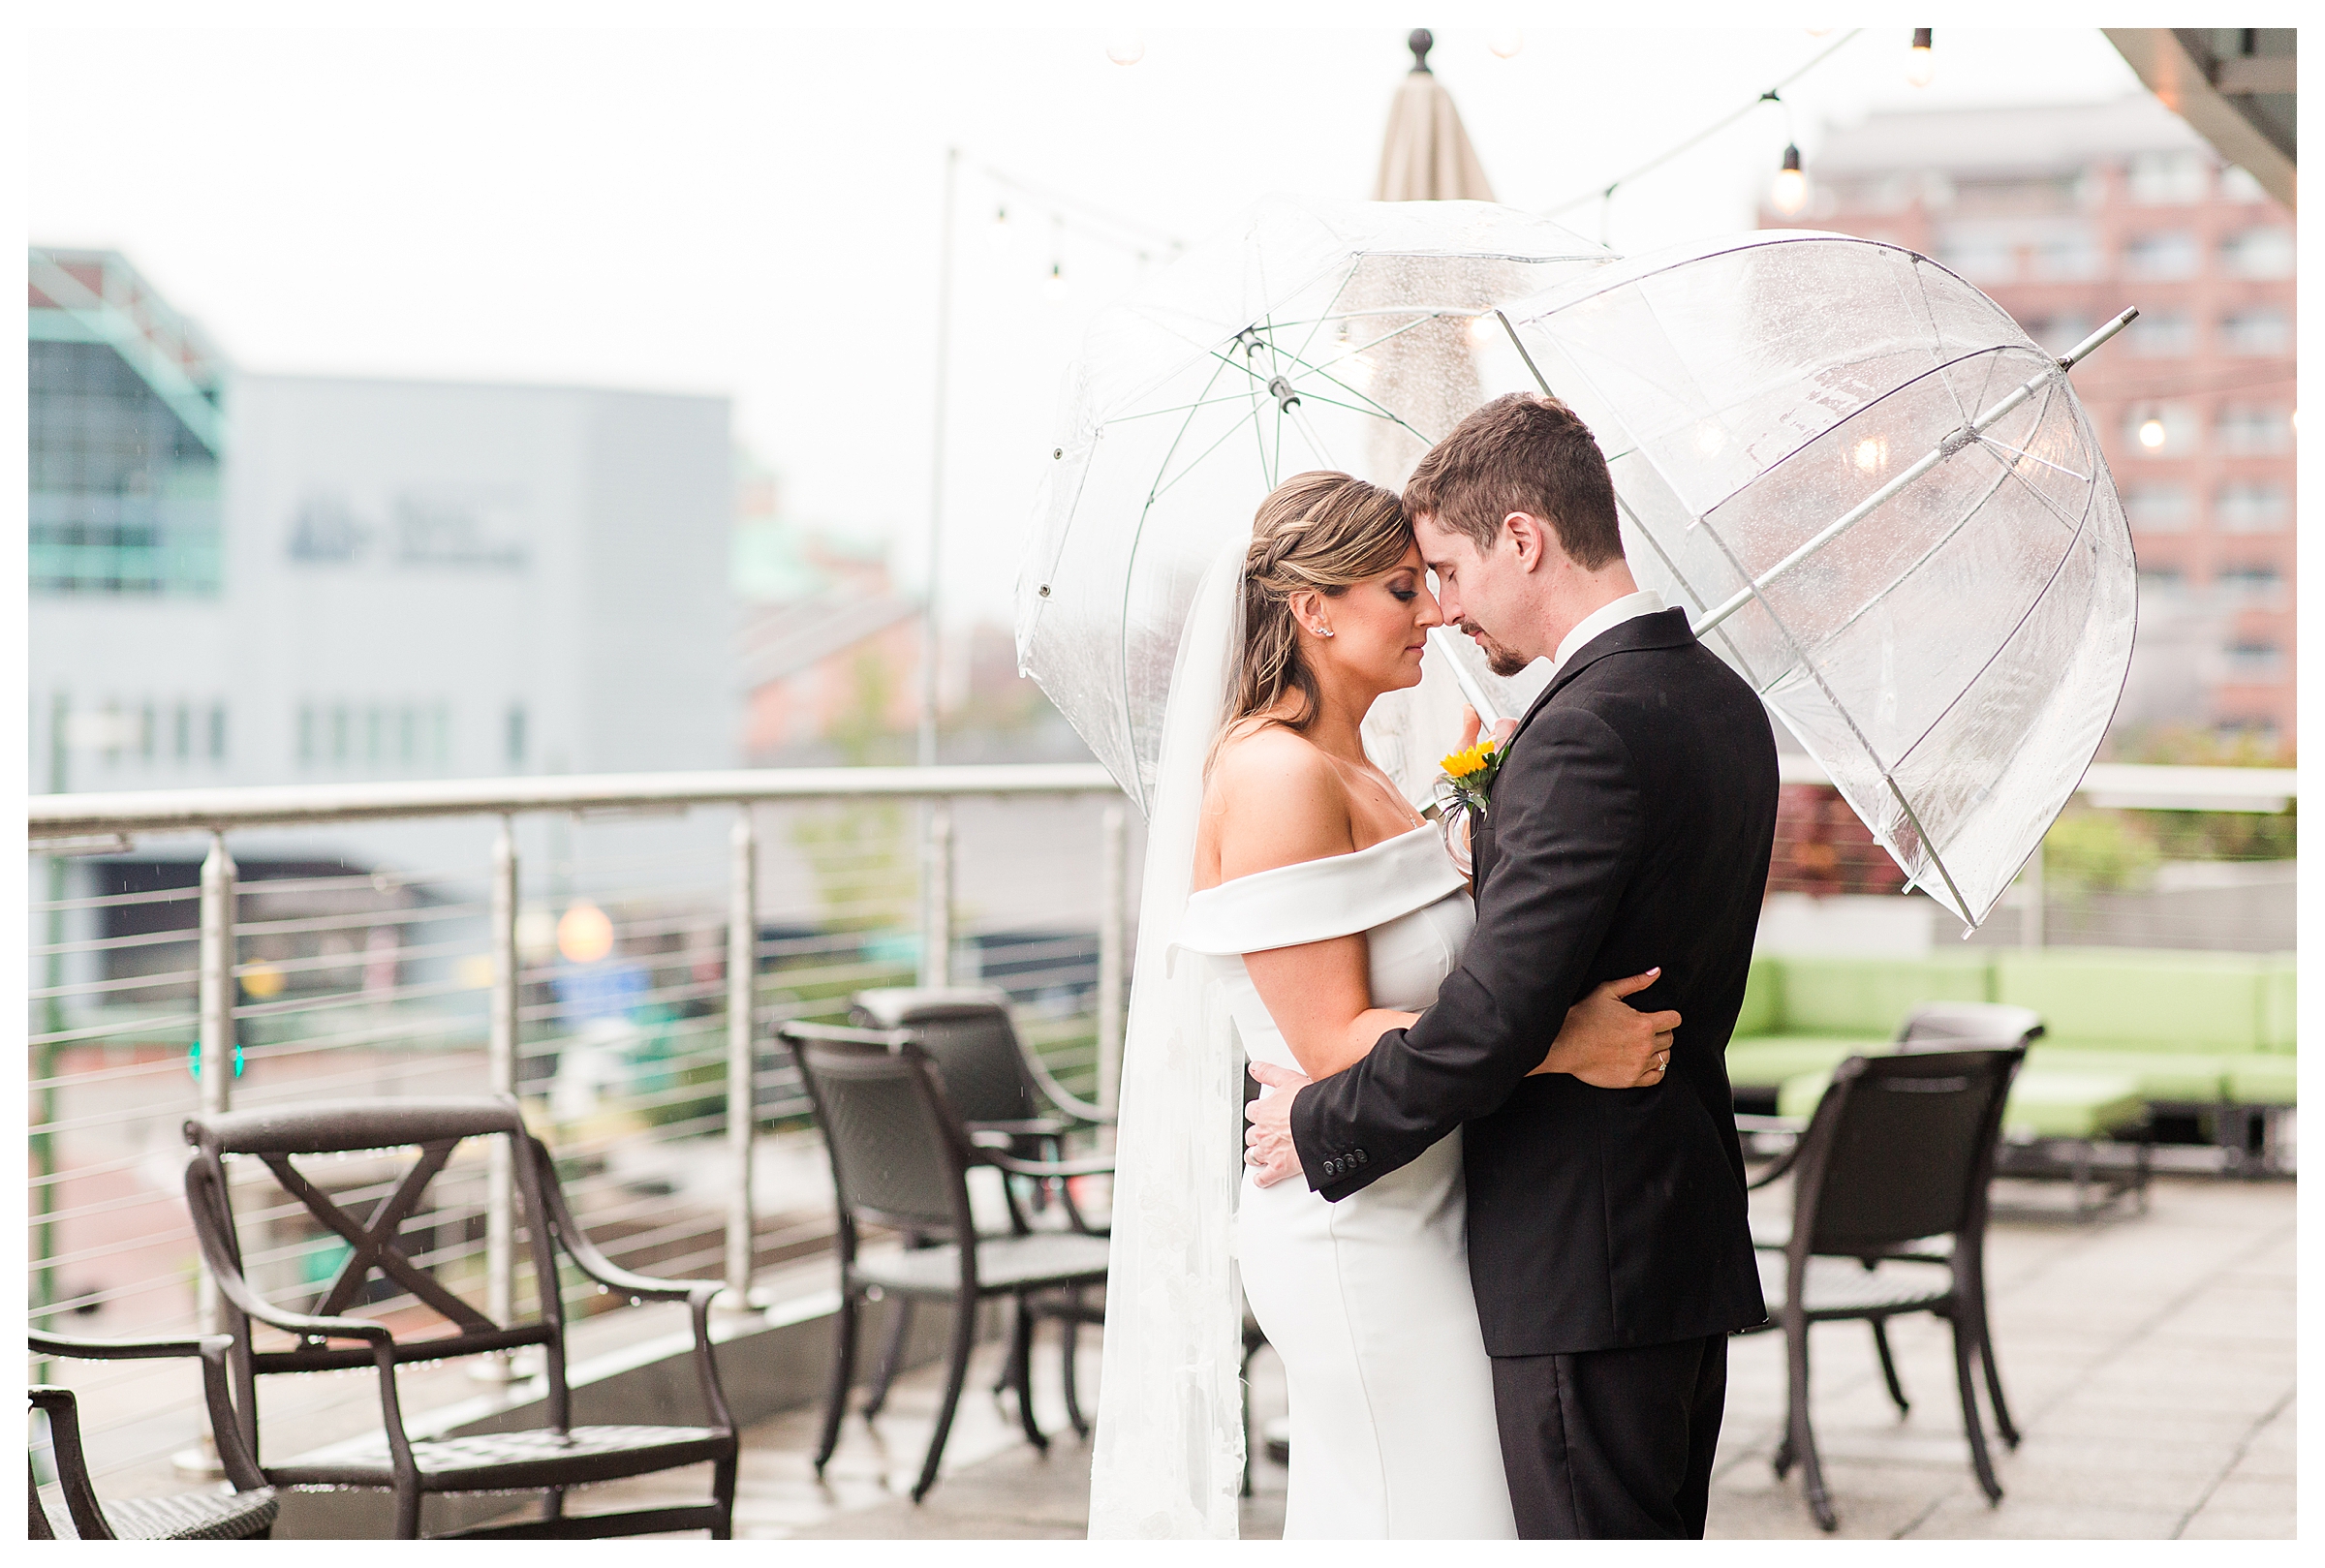 Bride & Groom embracing under umbrellas on wedding day.